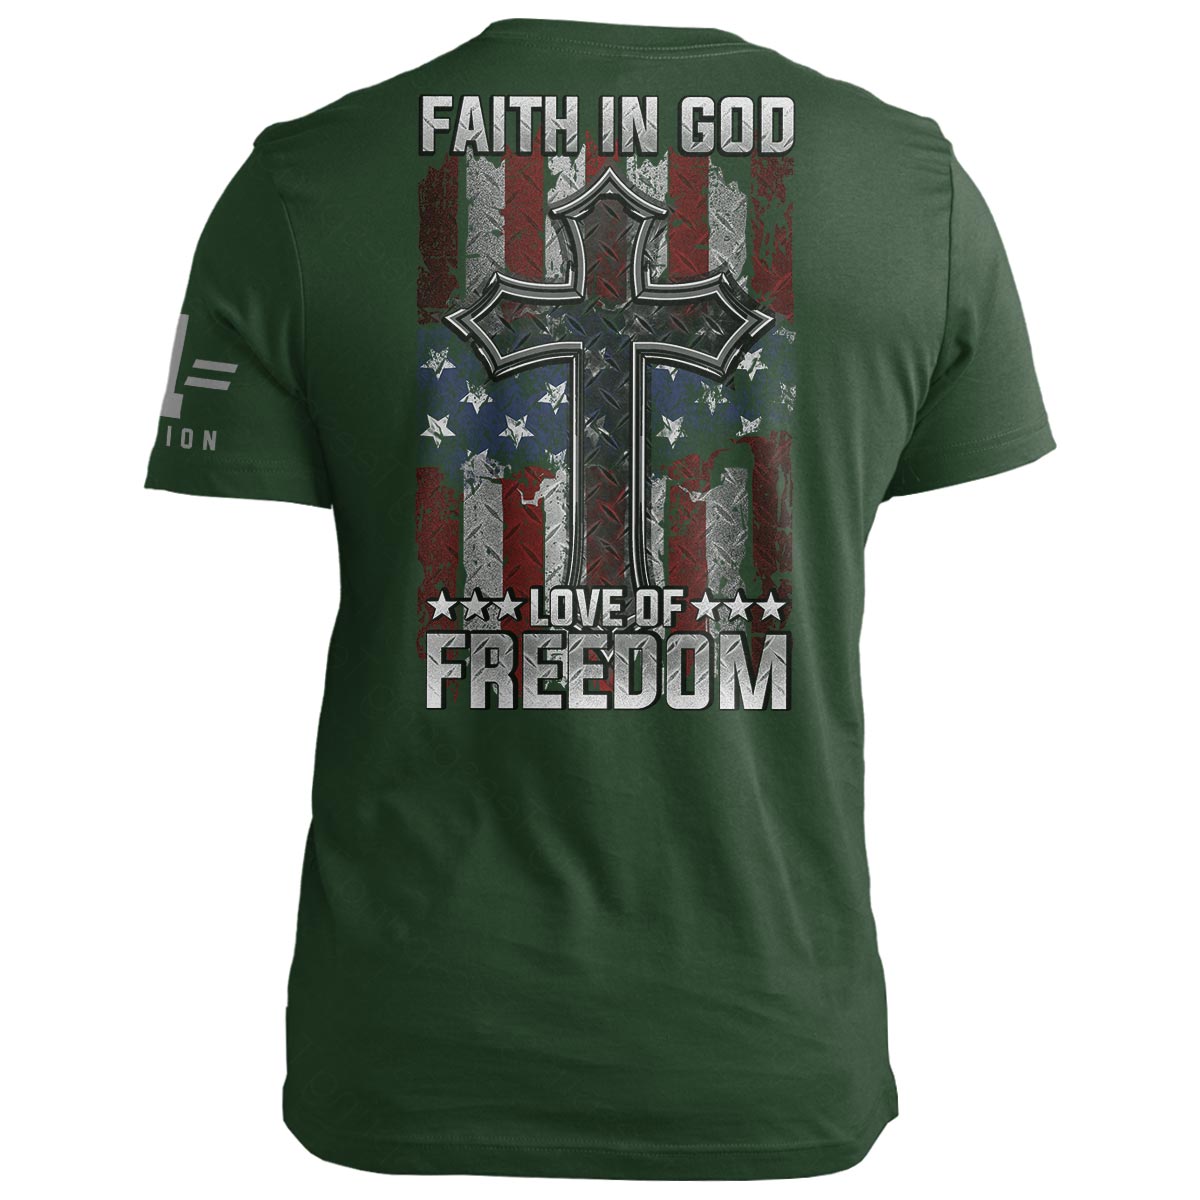 Faith in God. Love of Freedom